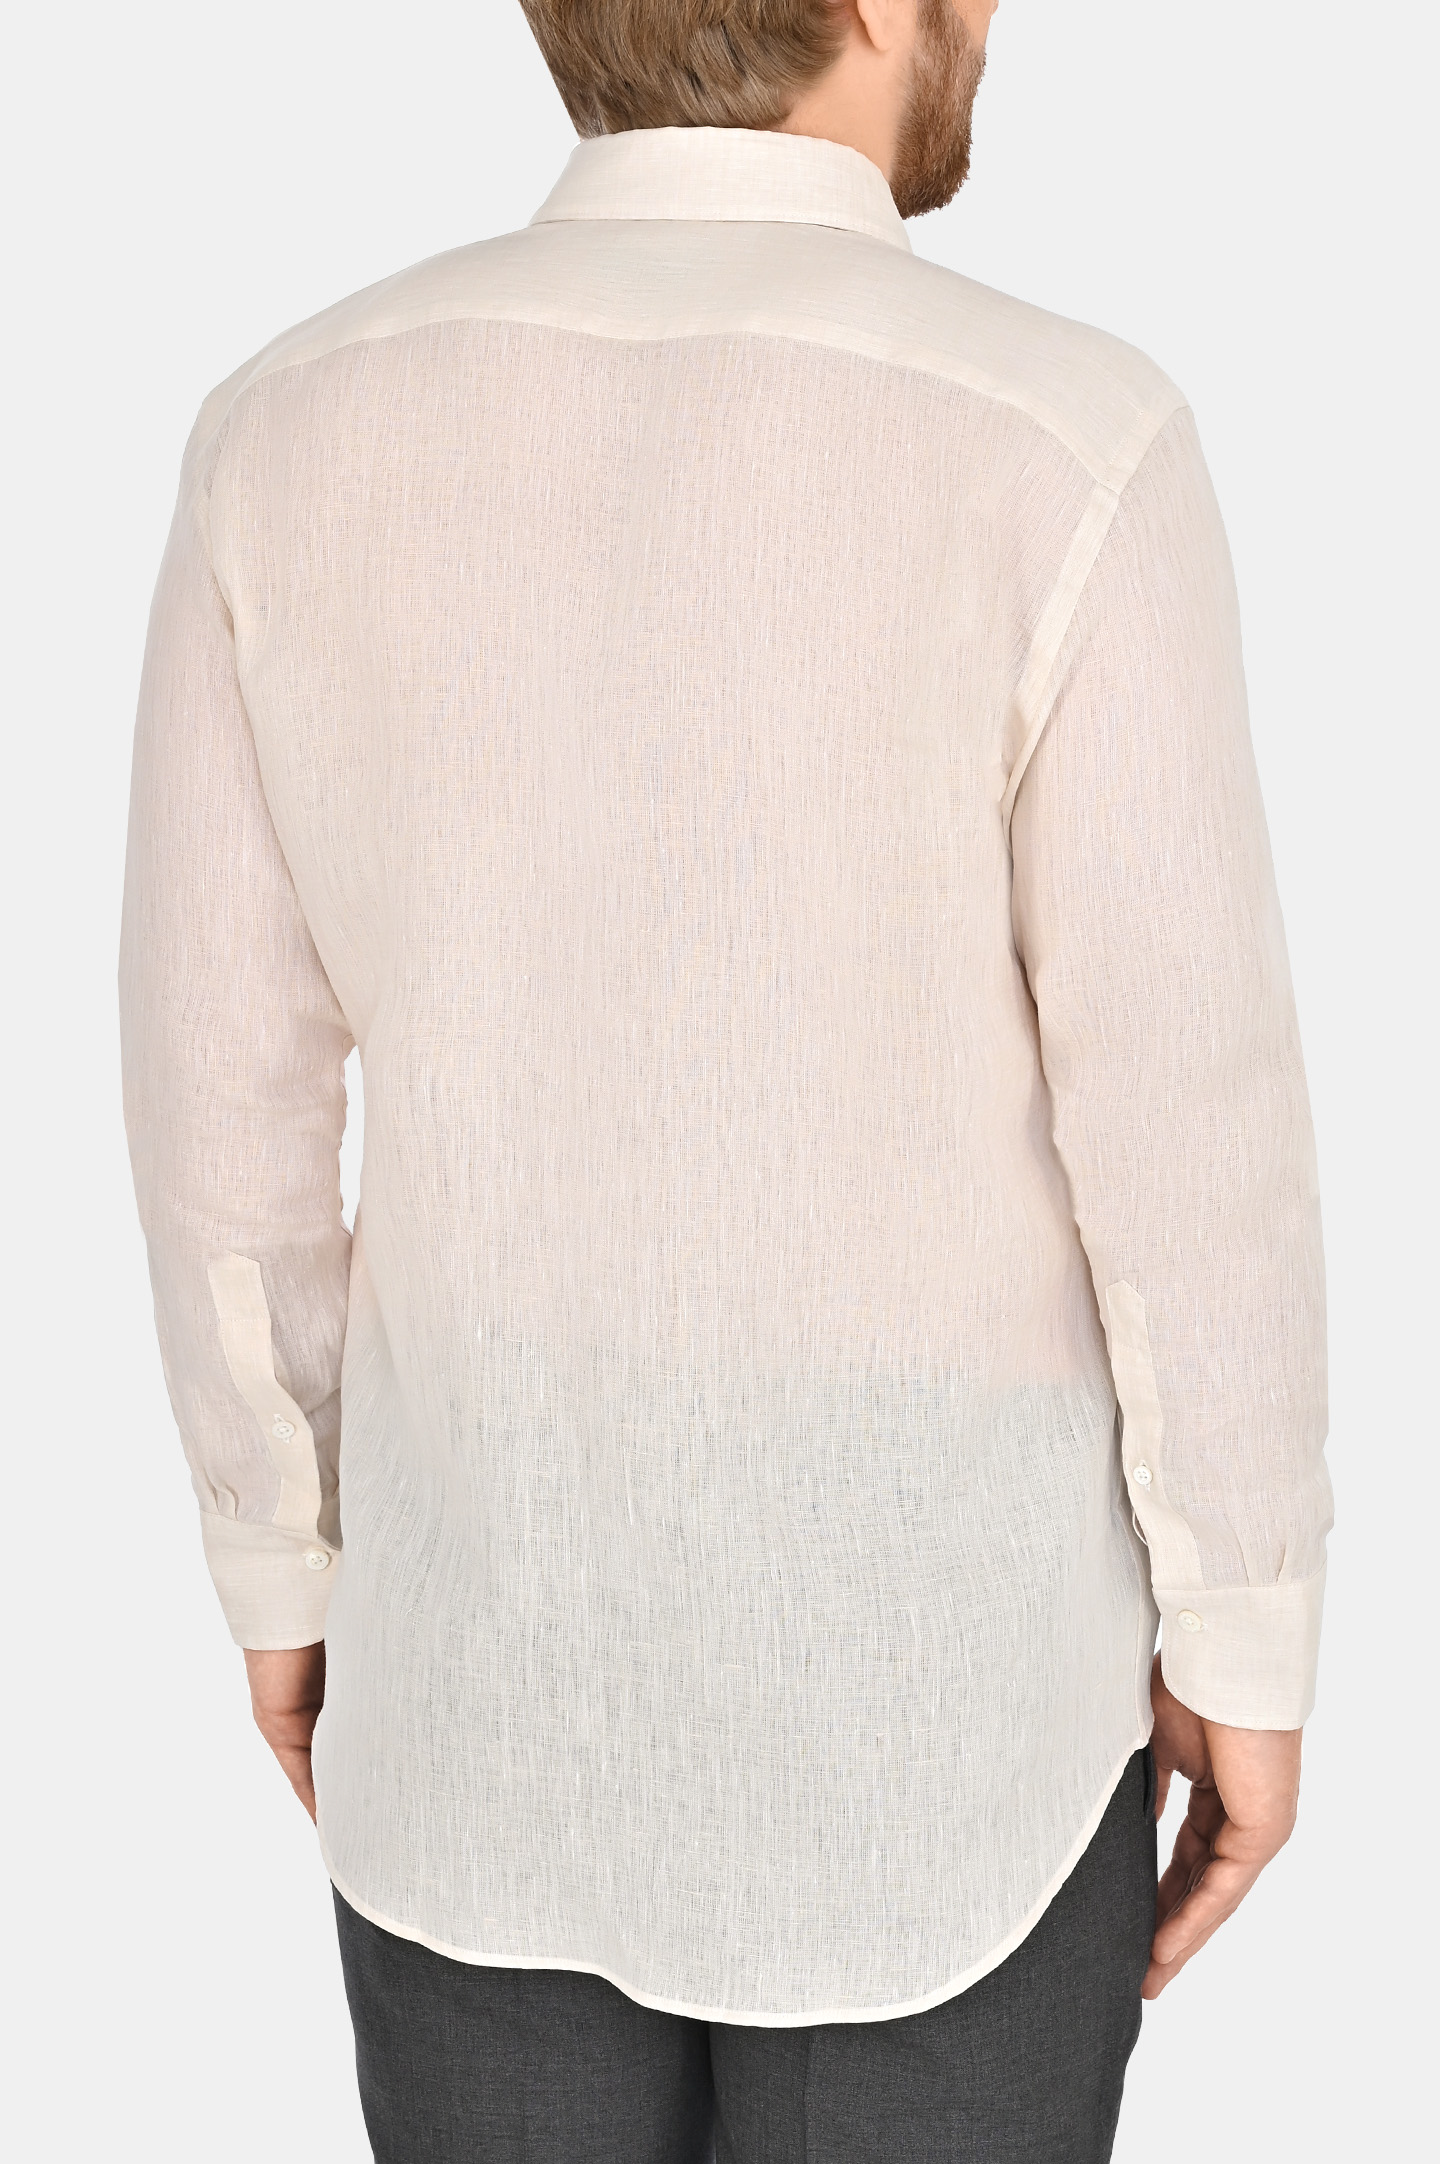 Льняная классическая рубашка CANALI GL03099 L7B1, цвет: Светло-бежевый, Мужской